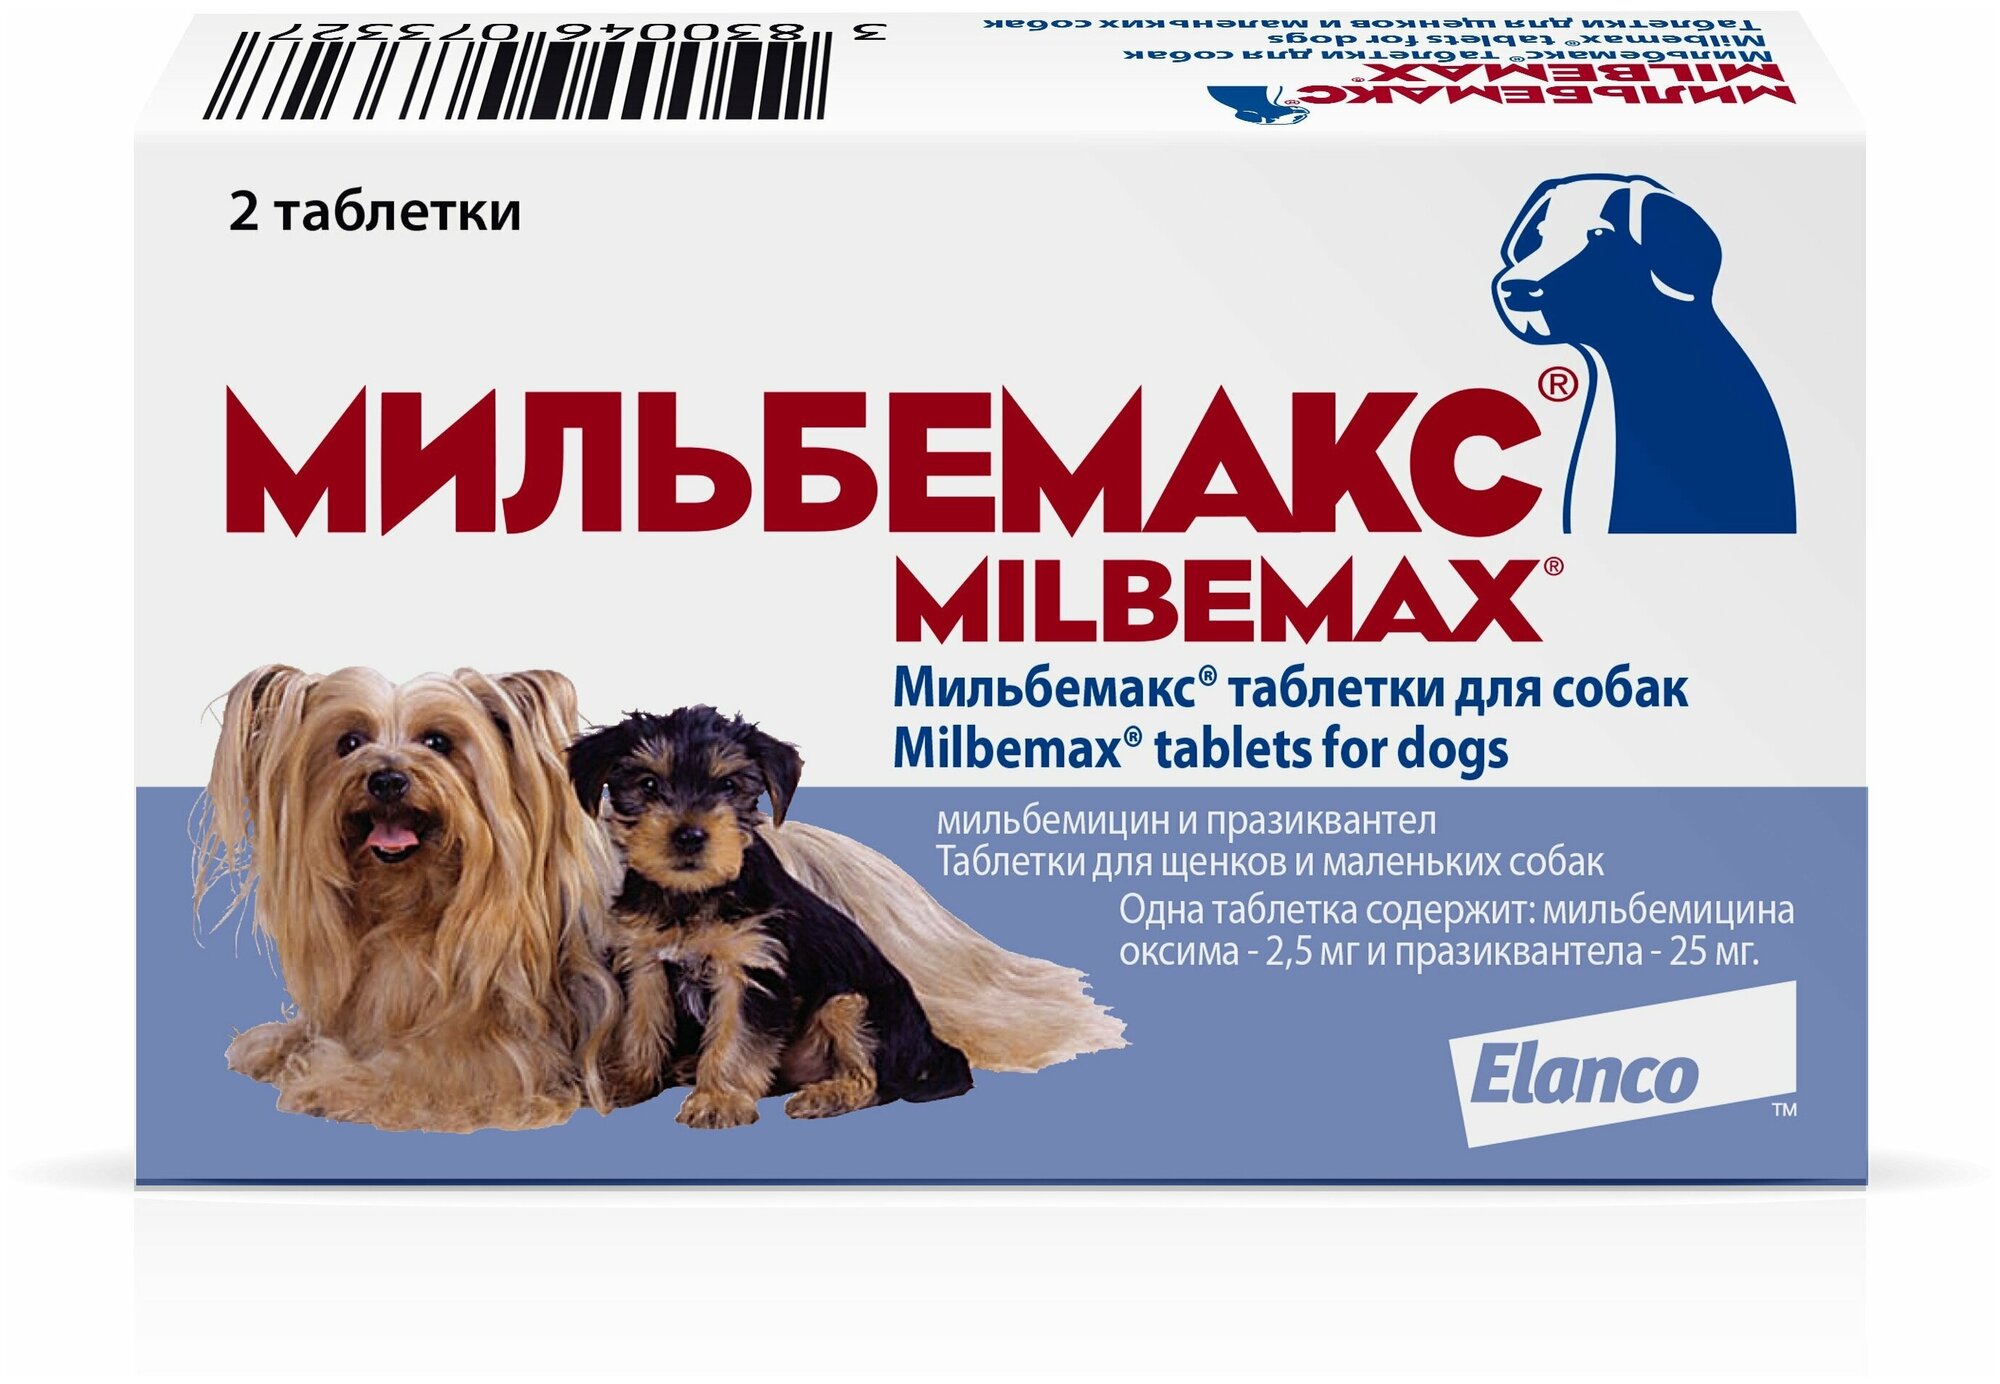 Мильбемакс®, таблетки от гельминтов для щенков и маленьких собак – 2 таблетки.